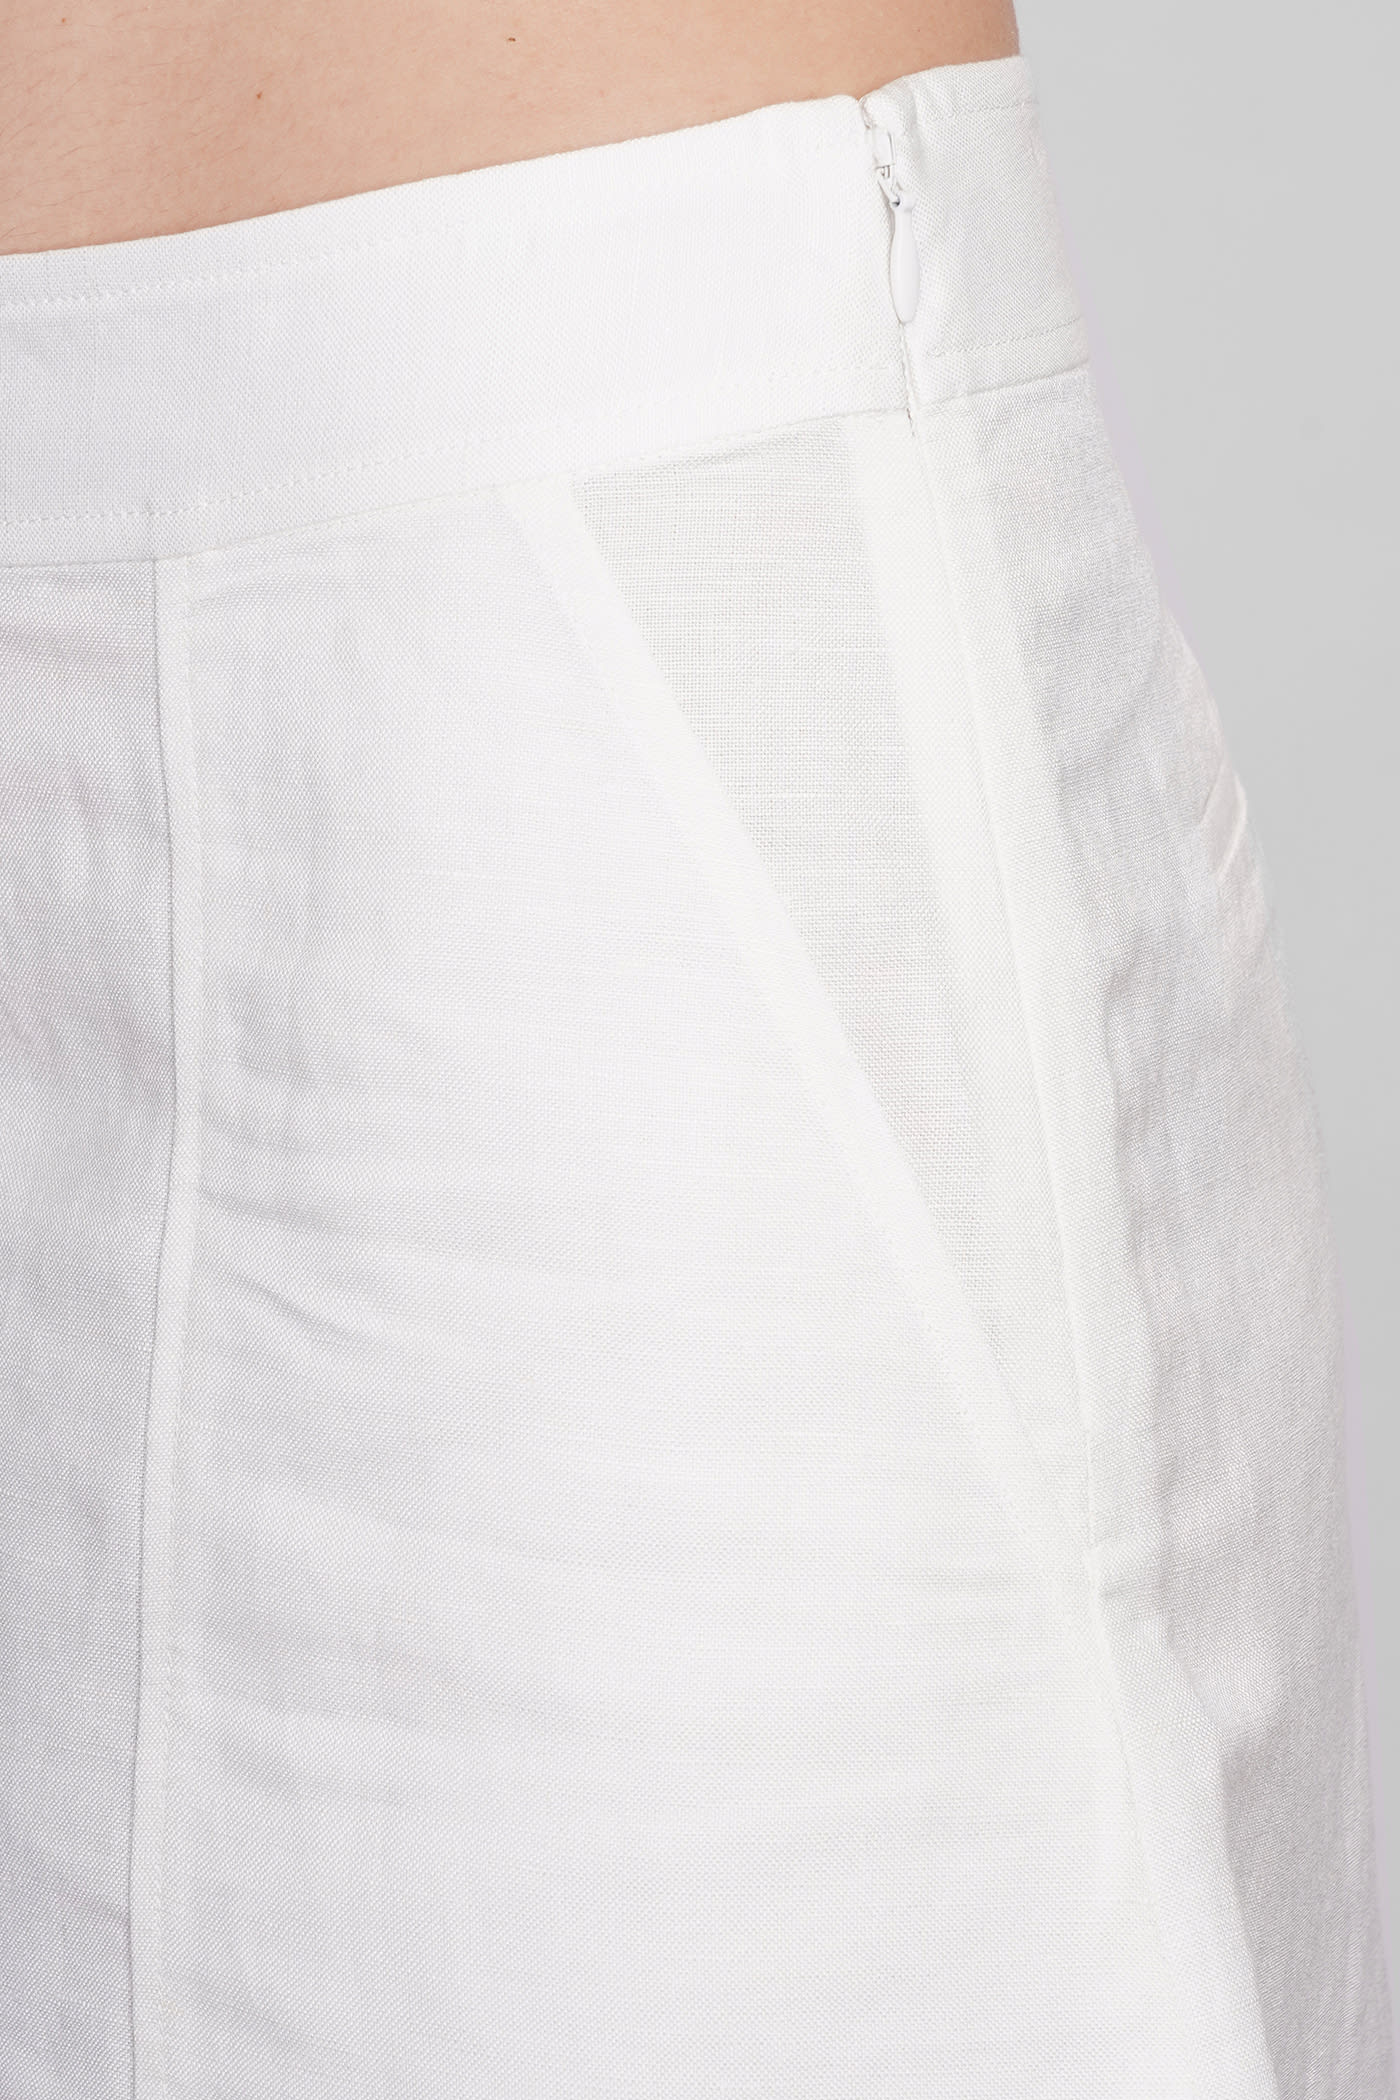 Shop Simkhai Dax Shorts In White Linen